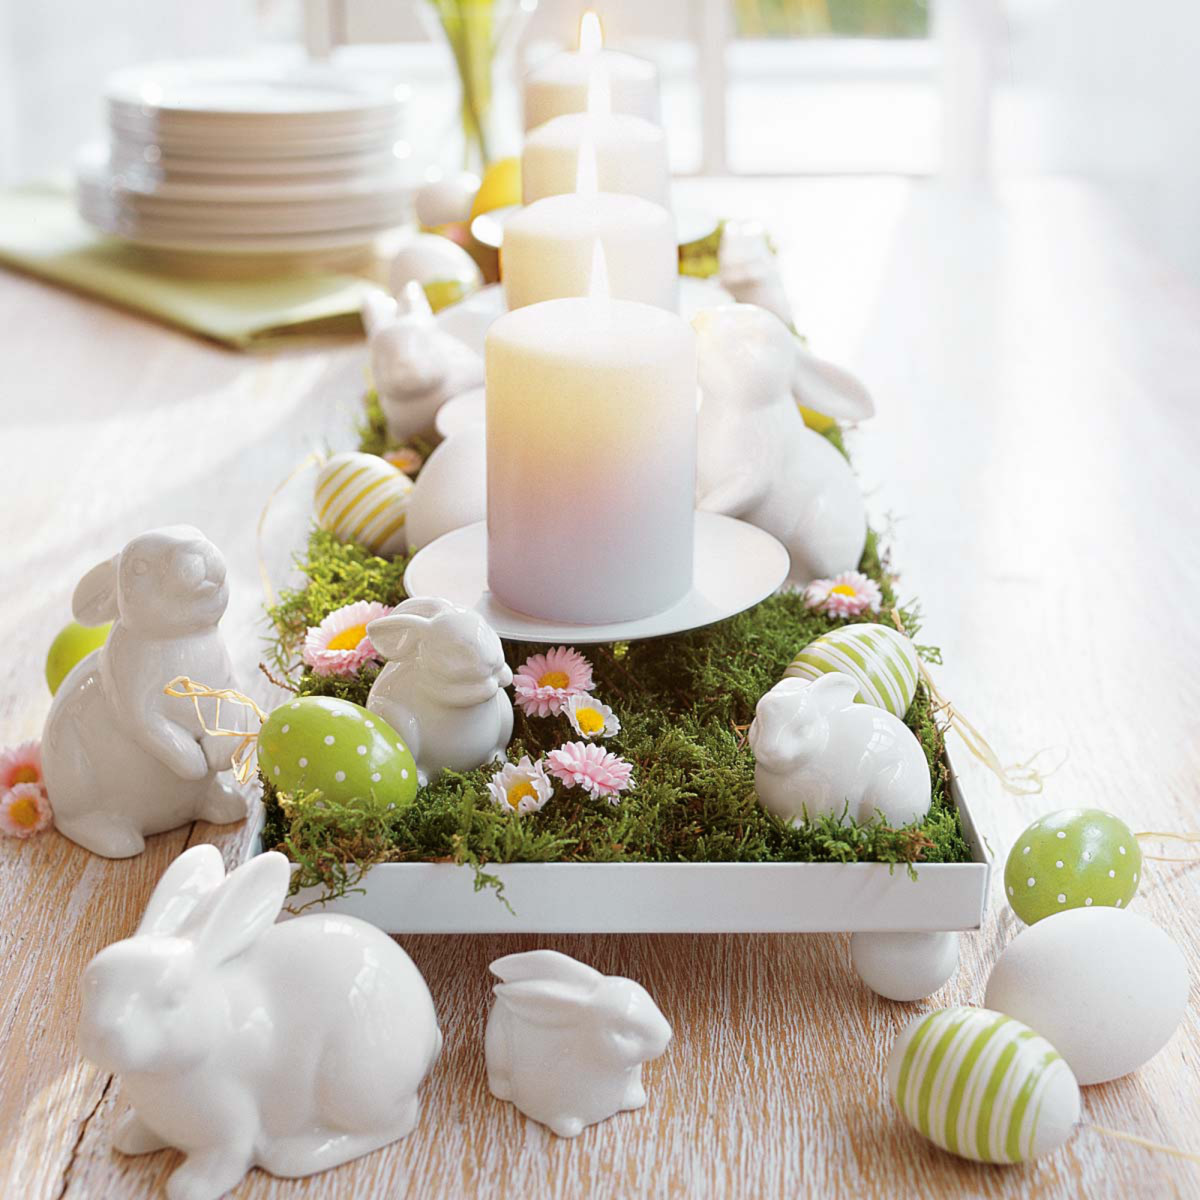 Voorverkoop grijnzend Lezen Tafel versieren voor Pasen - So Celebrate! - vier de seizoenen